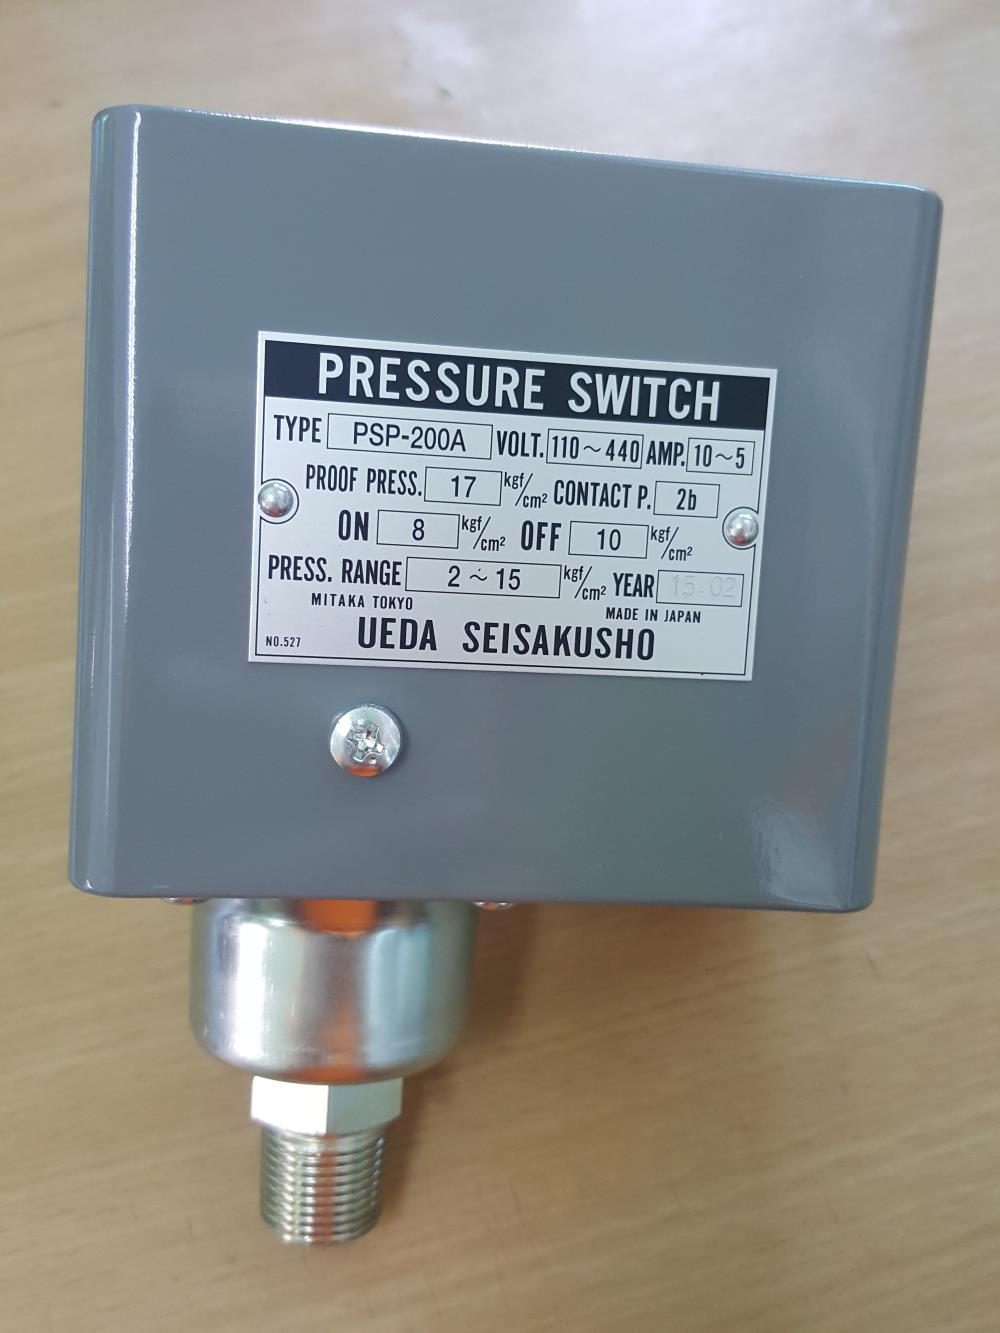 Pressure Switch (สวิทซ์ควบคุมความดัน)